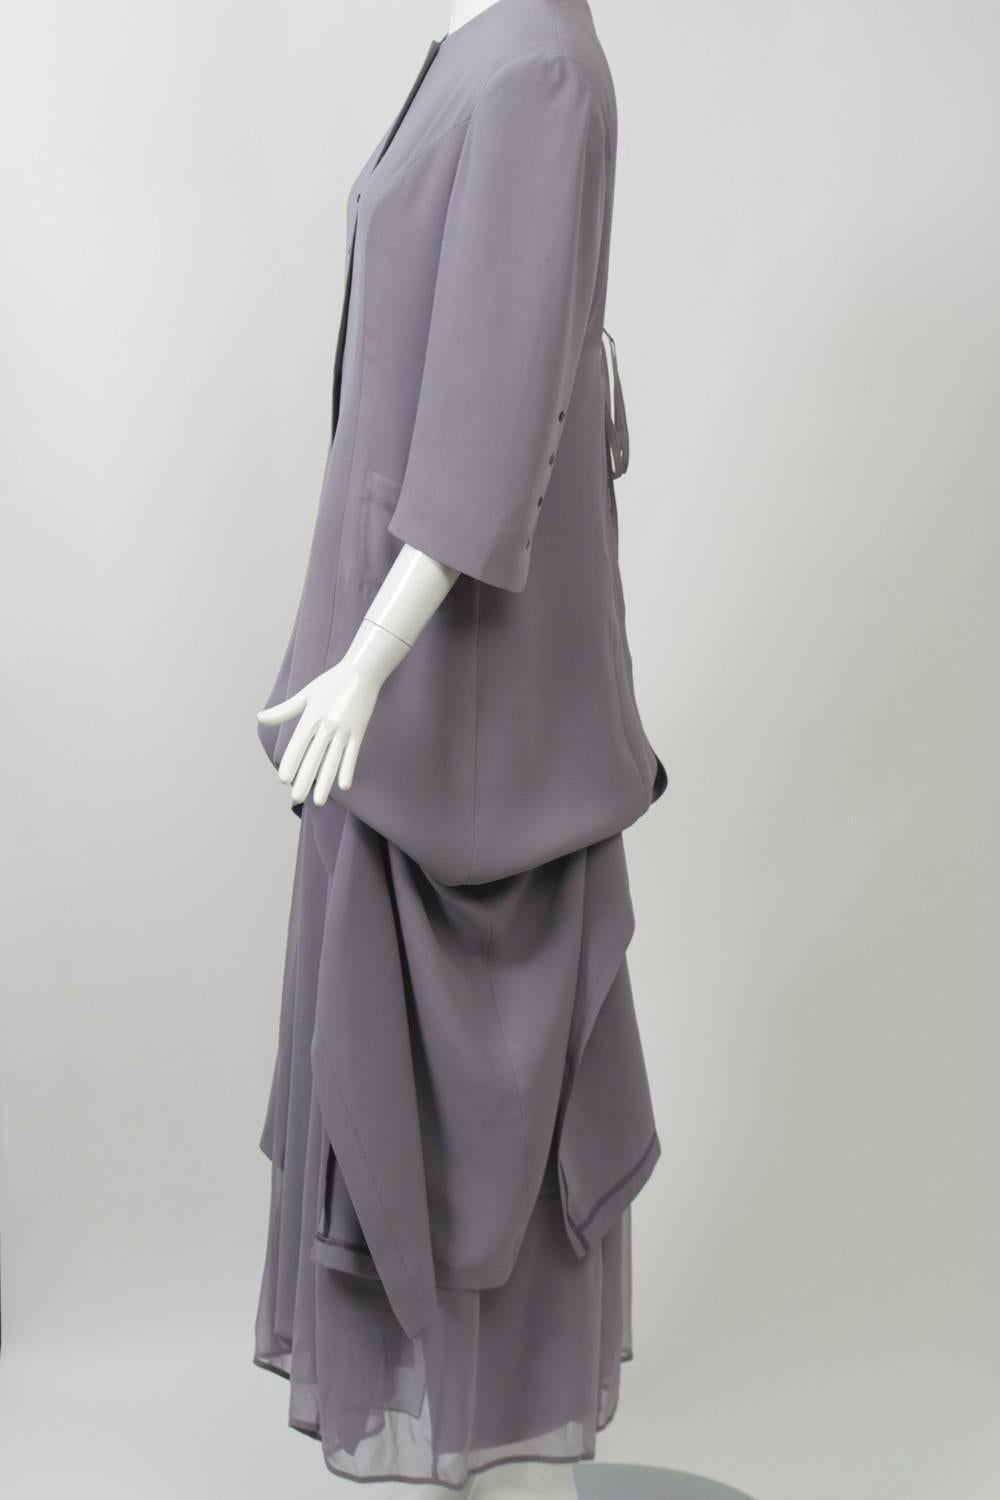 Langer Seidenmantel und Kleid von Morgane Le Fay in einem subtilen Grauton mit lilafarbener Tönung und auffälligen Details. Der Mantel ist mit Innenbändern versehen, zwei auf jeder Seite, die den langen Rock wie einen Schatten hochziehen und eine